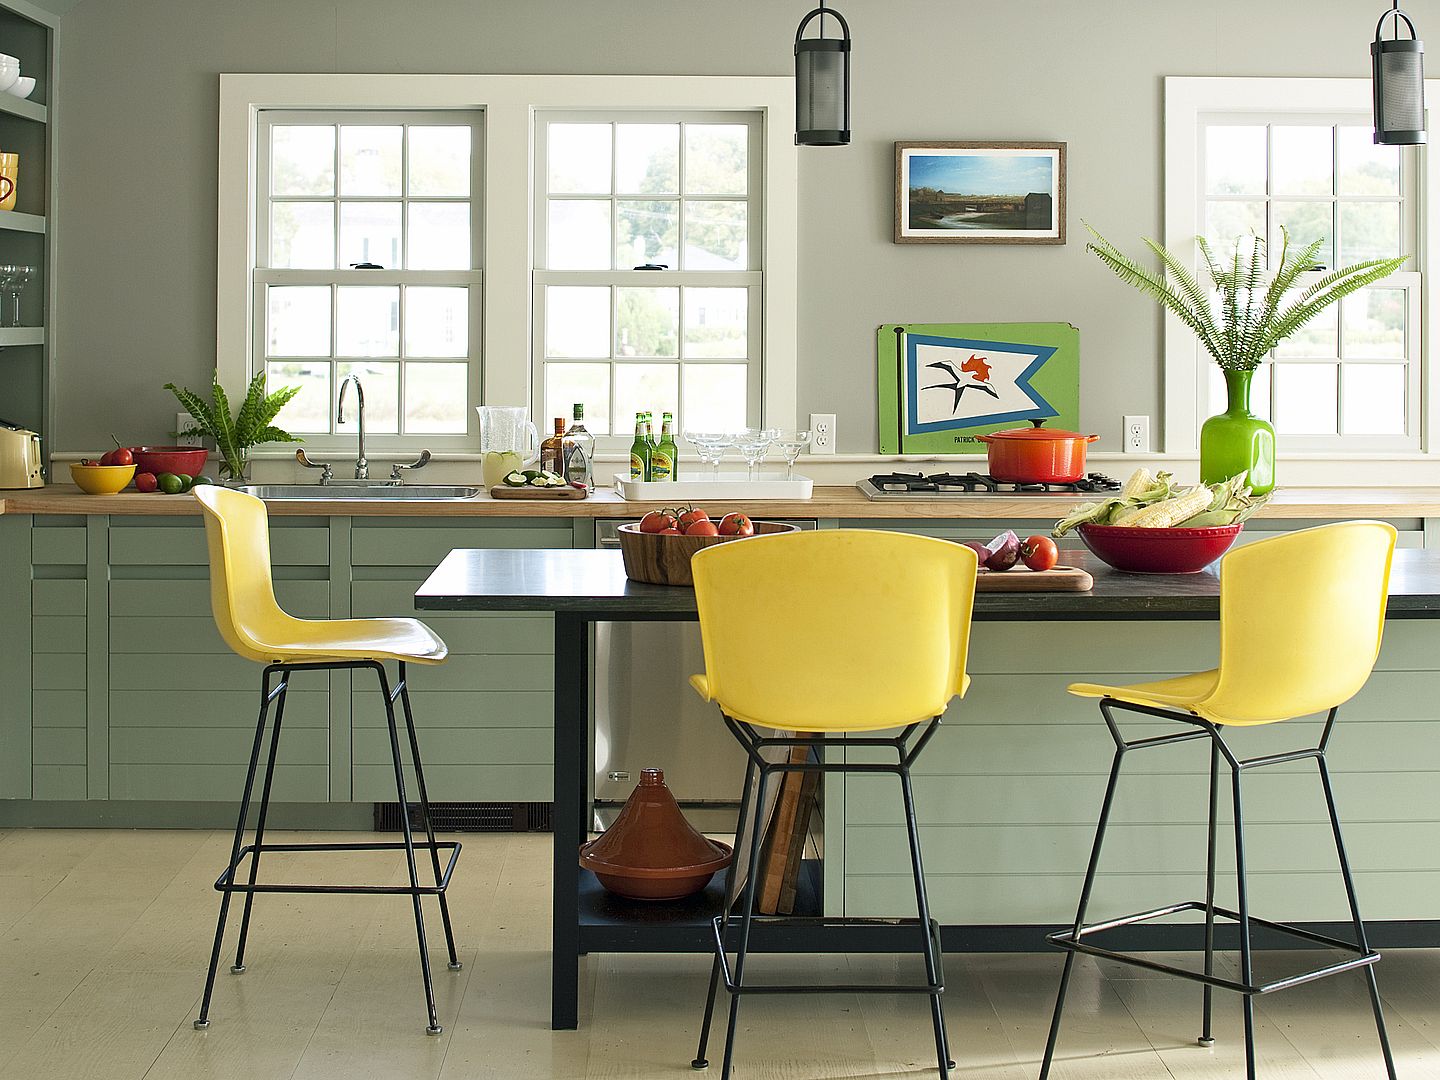 Dapur akan terlihat fresh dan menarik dengan kombinasi warna hijau sage dan kuning.